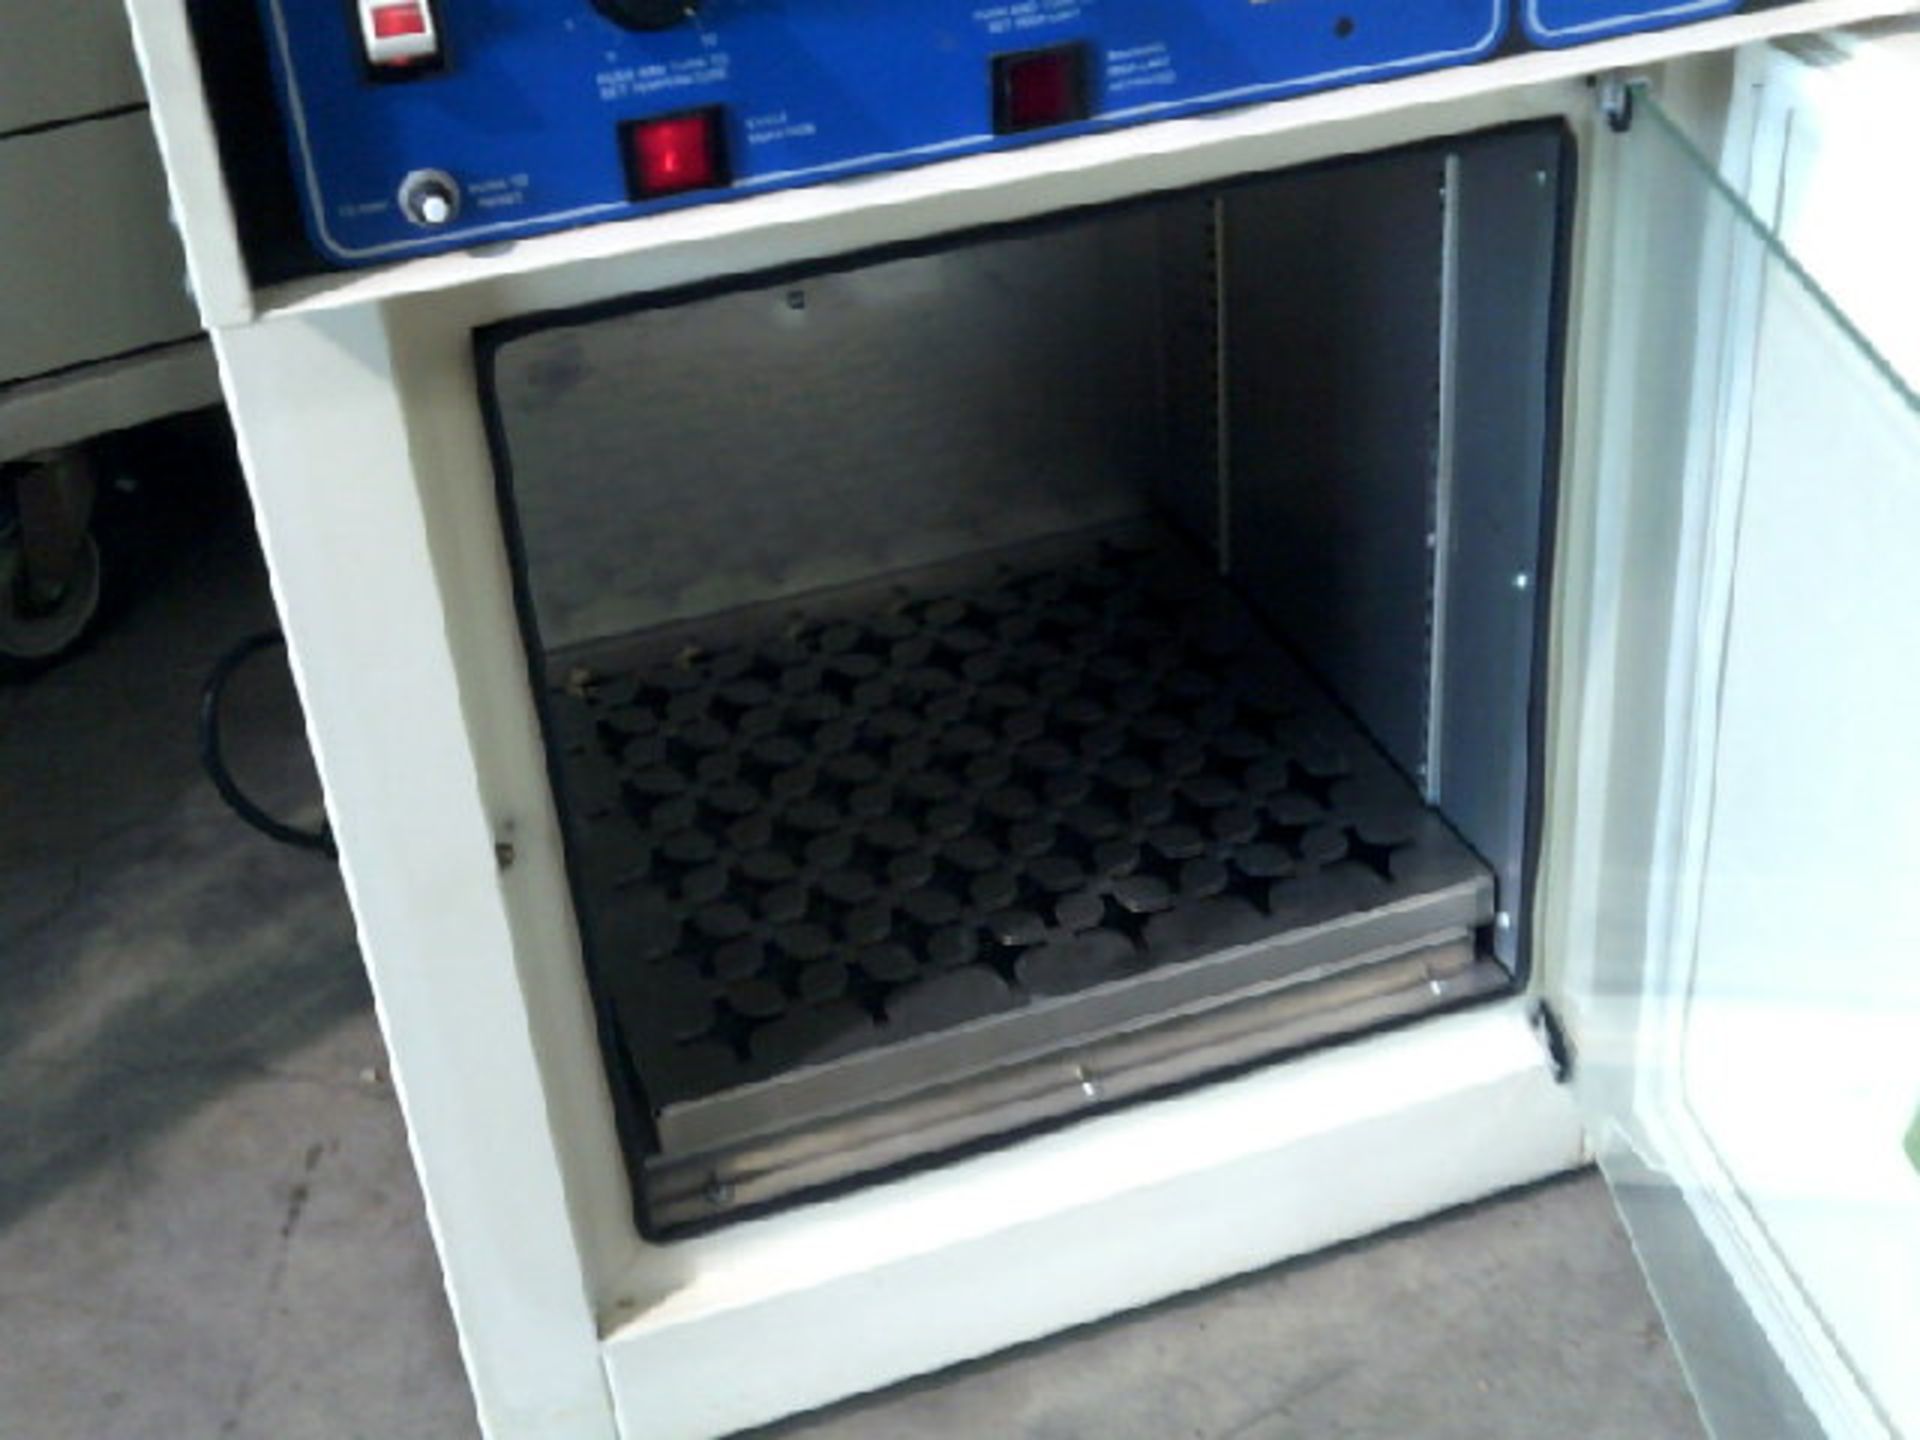 VWR Sheldon 1520 Incubator 1.95 CU ft Capacity, Qty 1, 332741440622 - Image 7 of 7